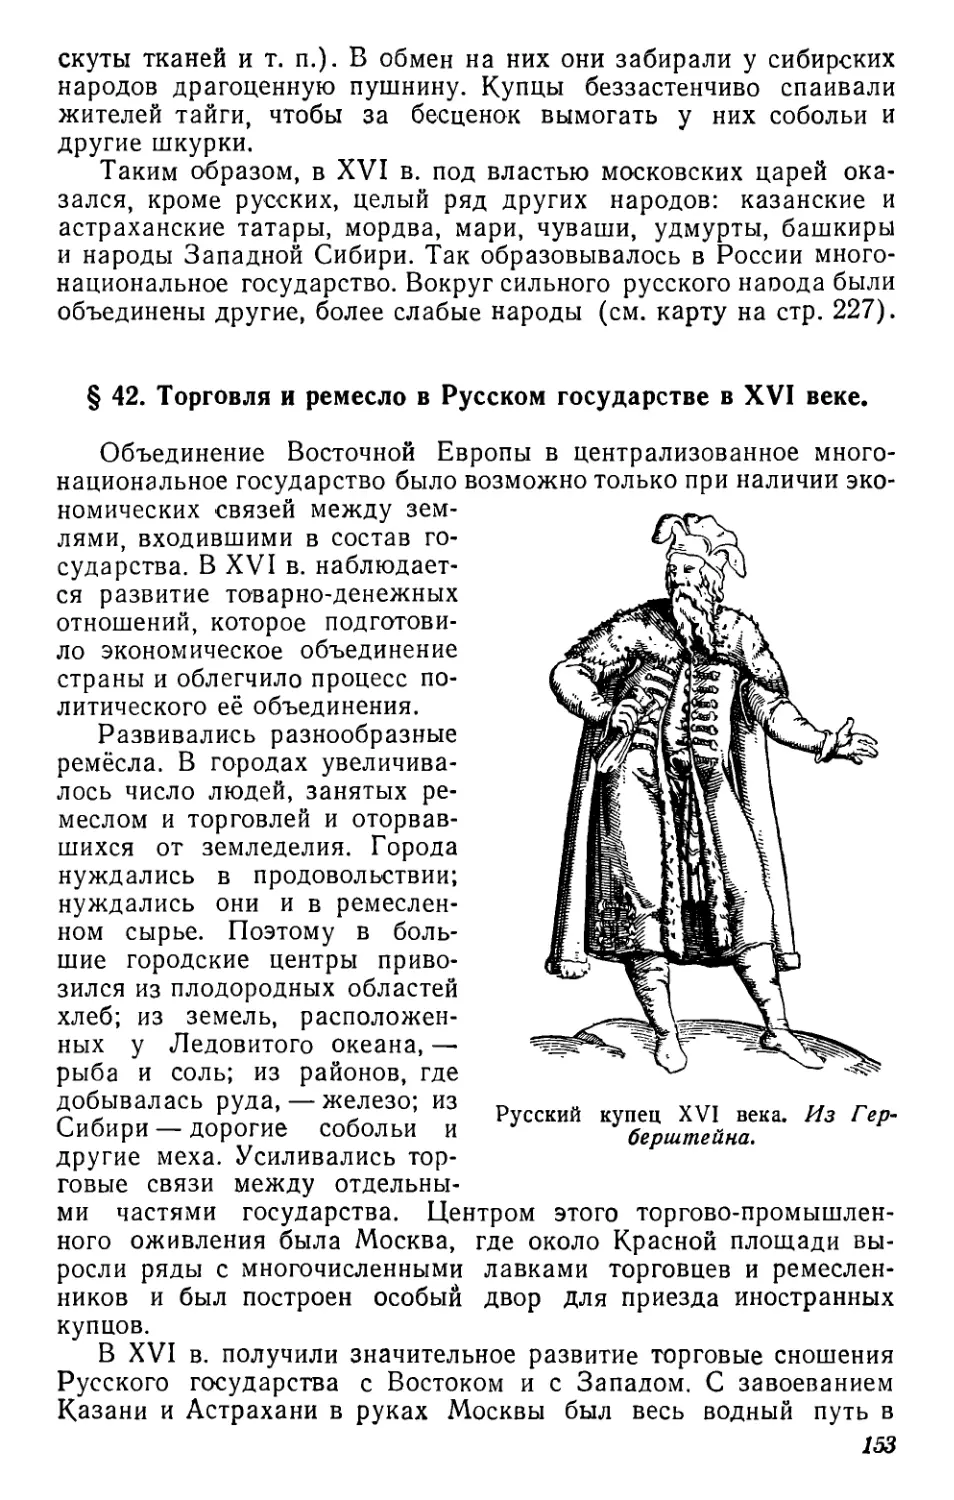 § 42. Торговля и ремесло в Русском государстве в XVI веке